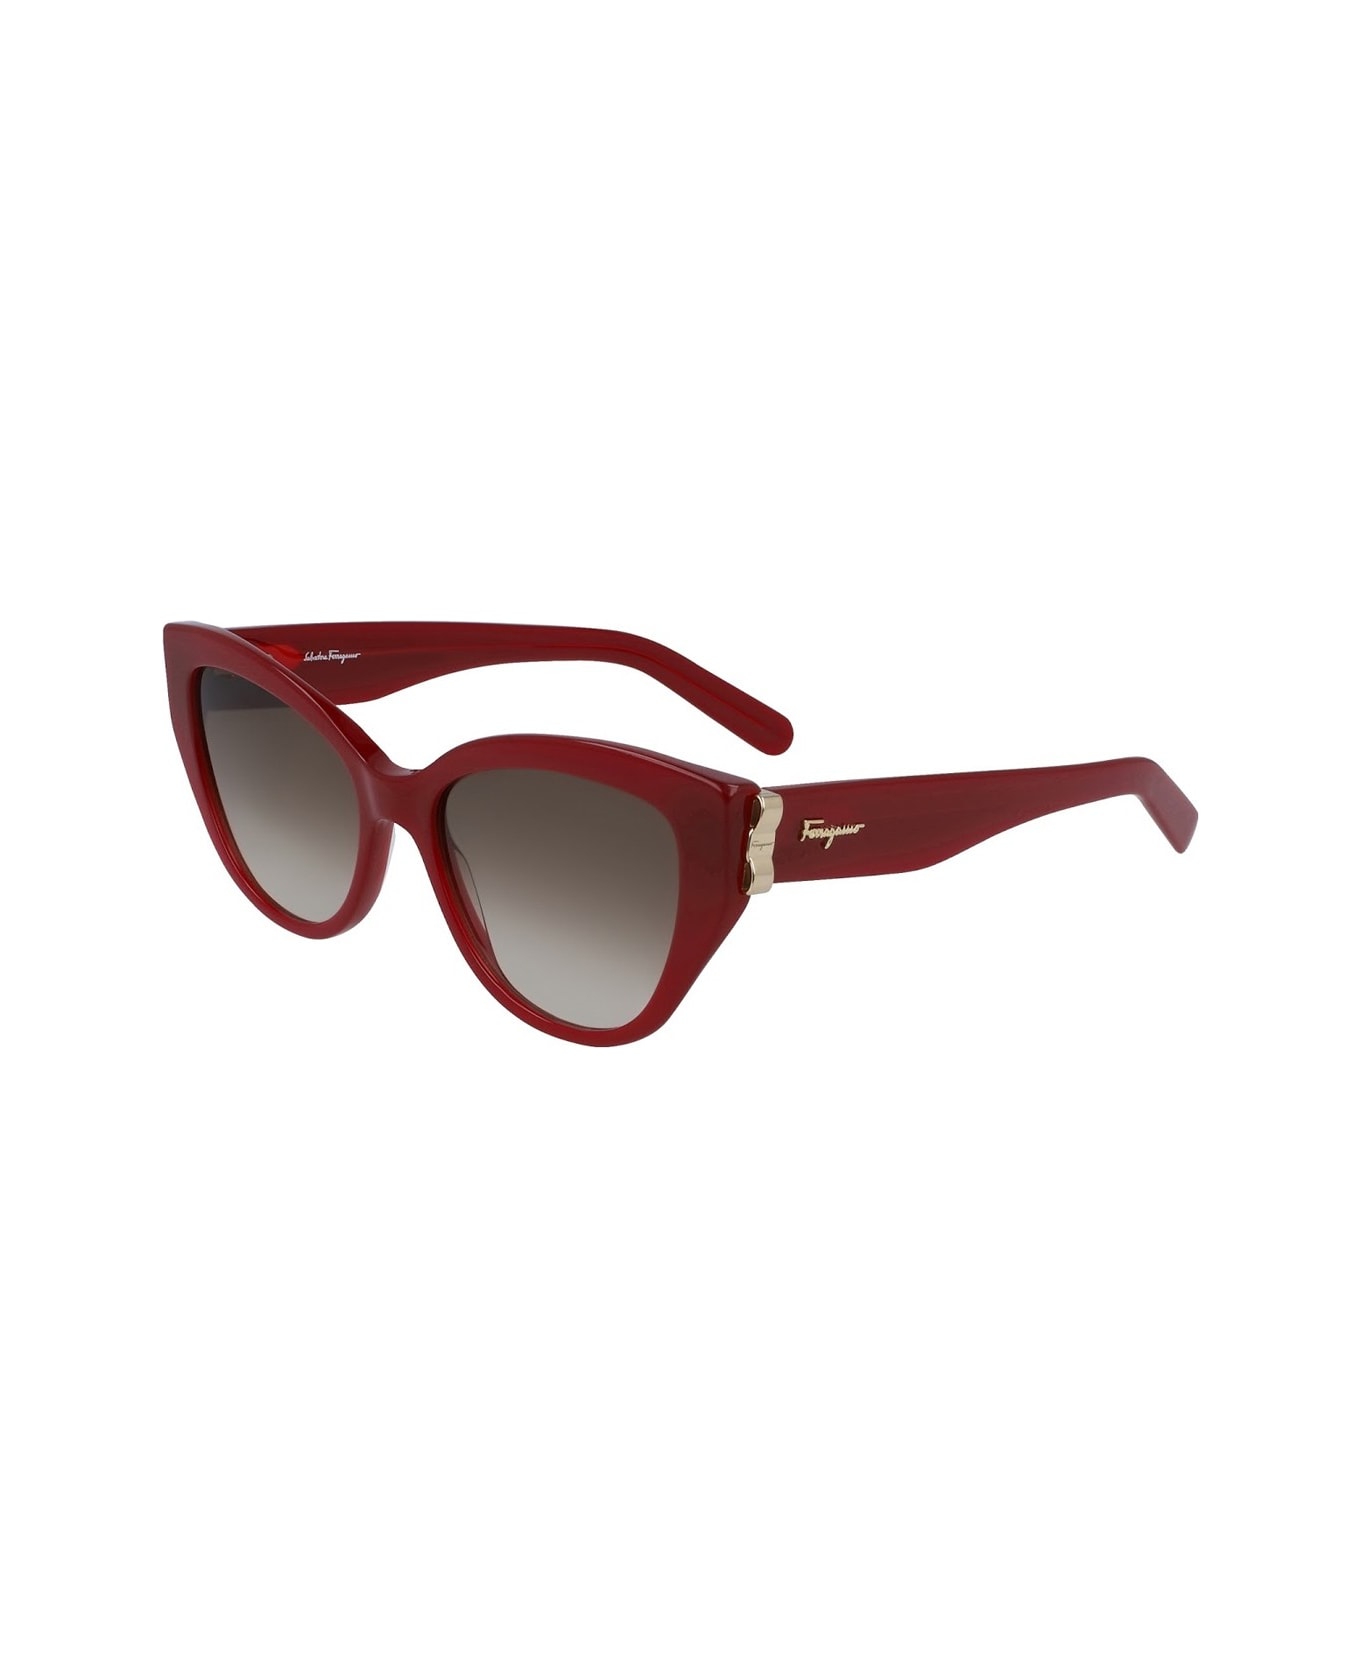 Salvatore Ferragamo Eyewear Salavore Ferragamo Sf969s Sunglasses - Rosso